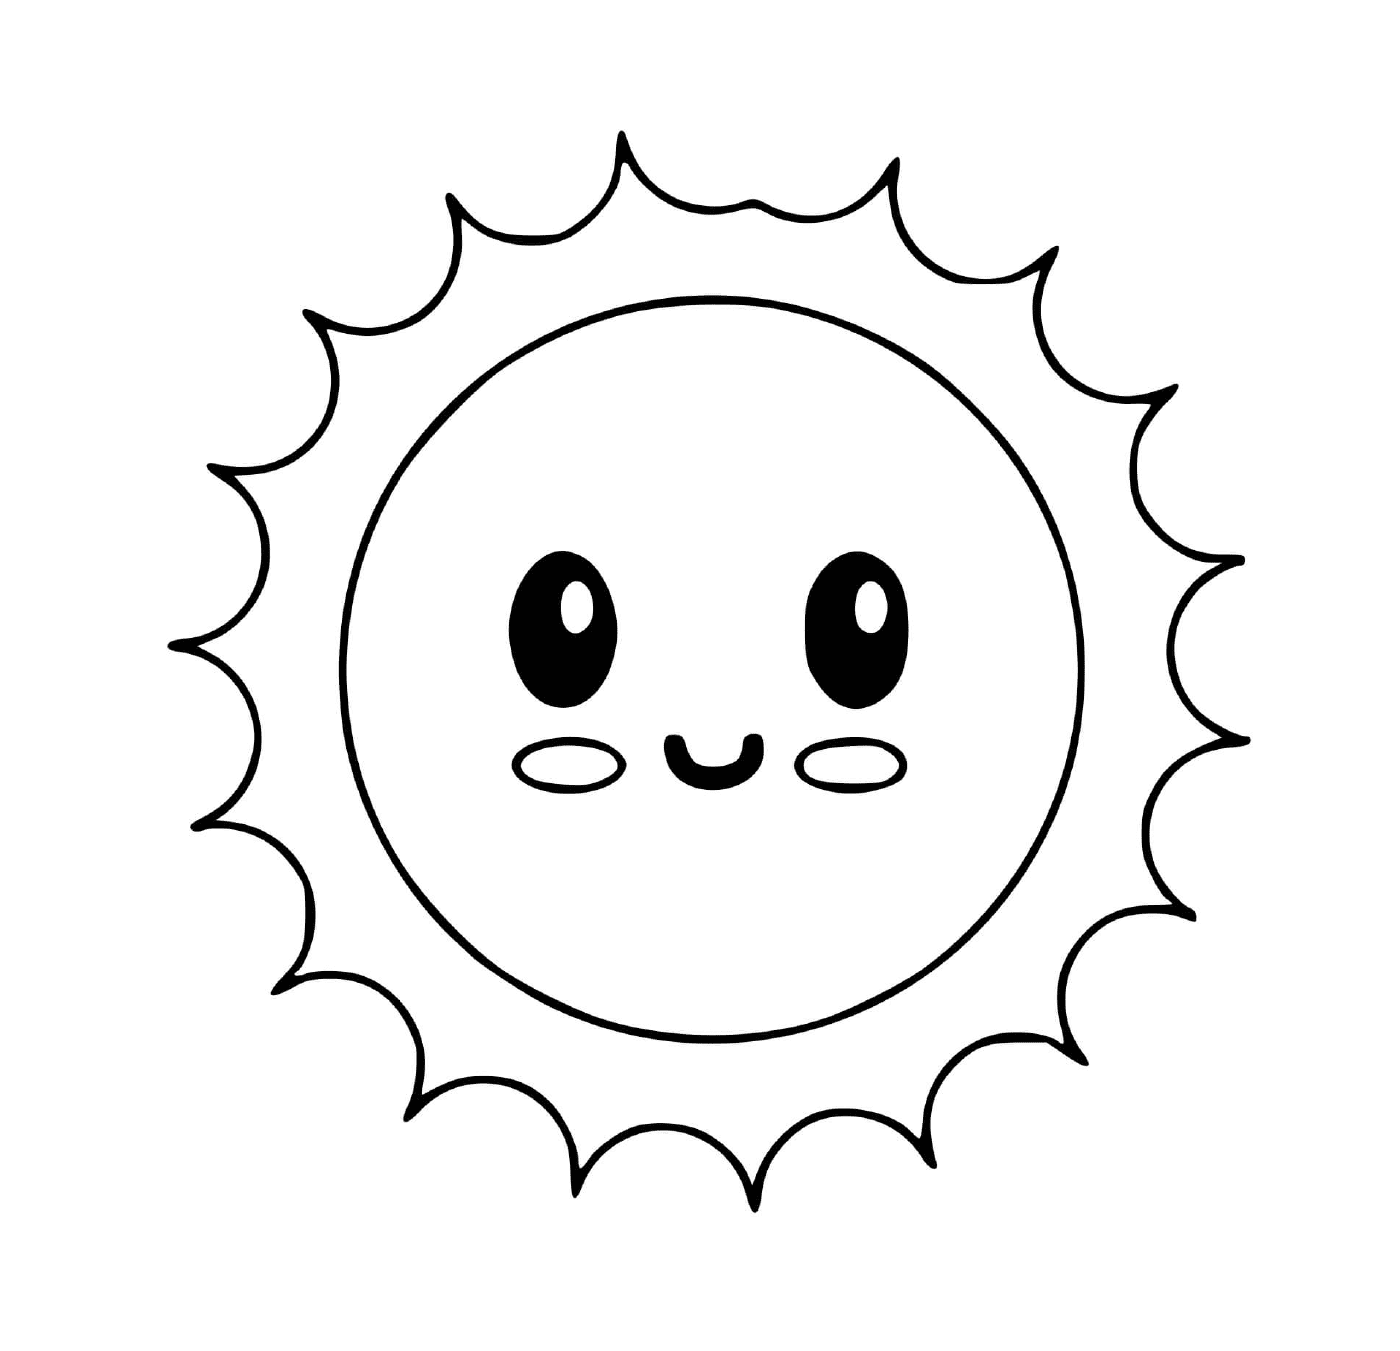  Pequeña estrella de sol kawaii 